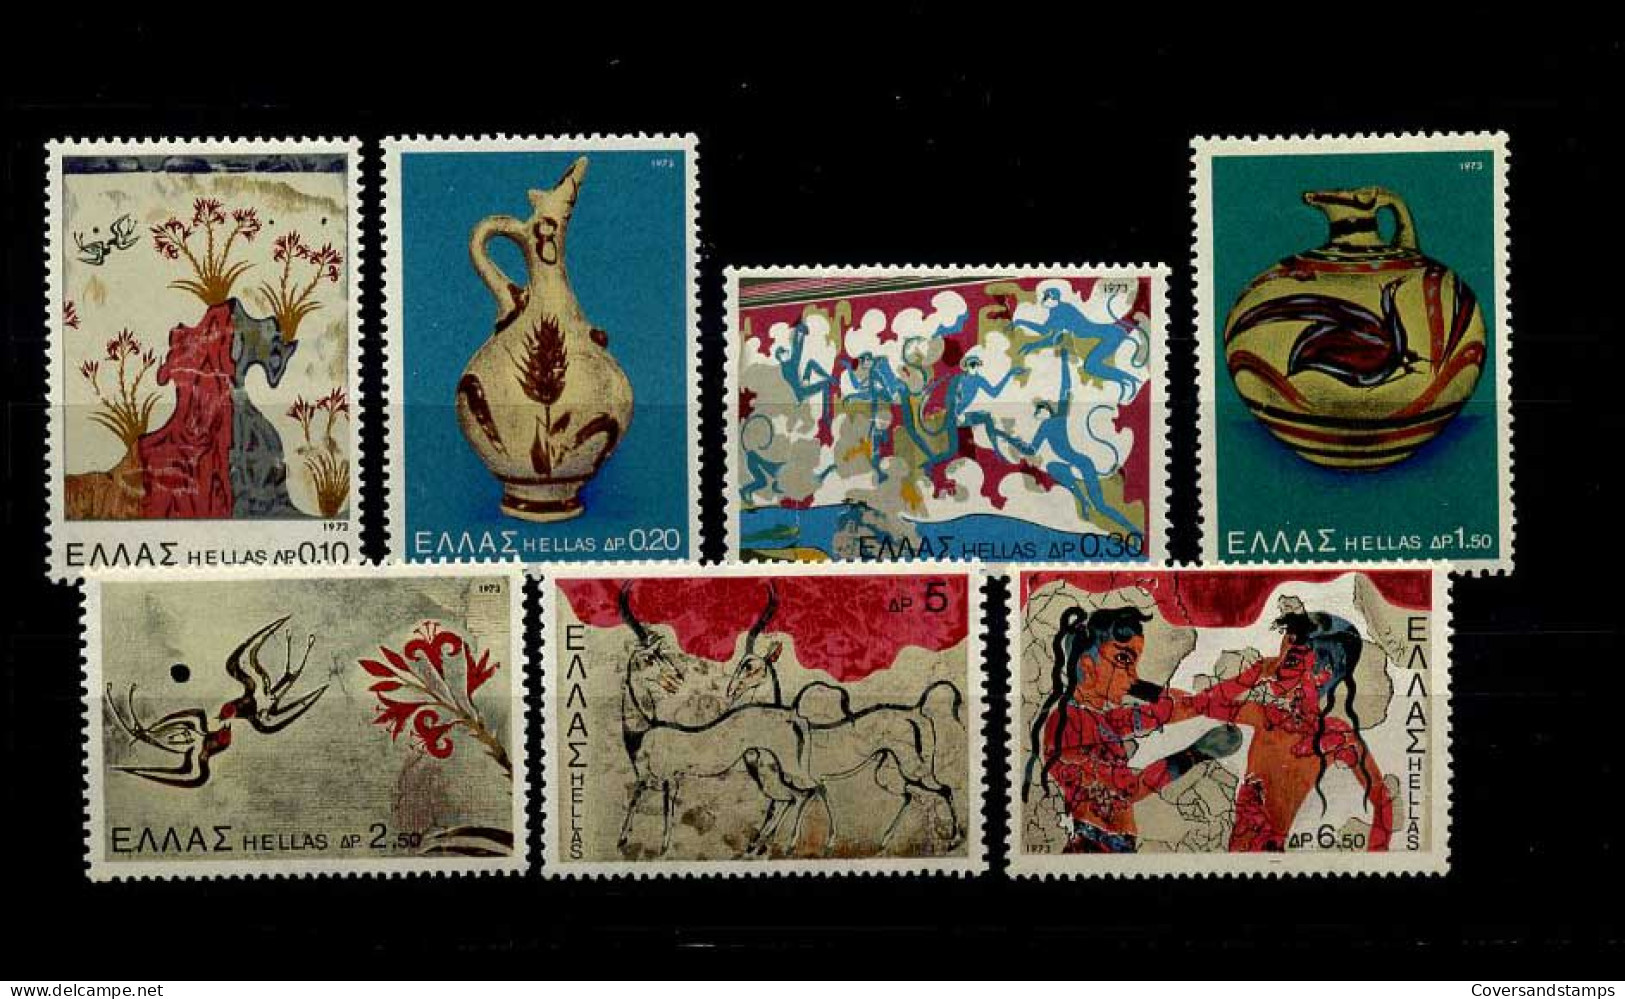 Griekenland - 1100/06 - MNH - Unused Stamps